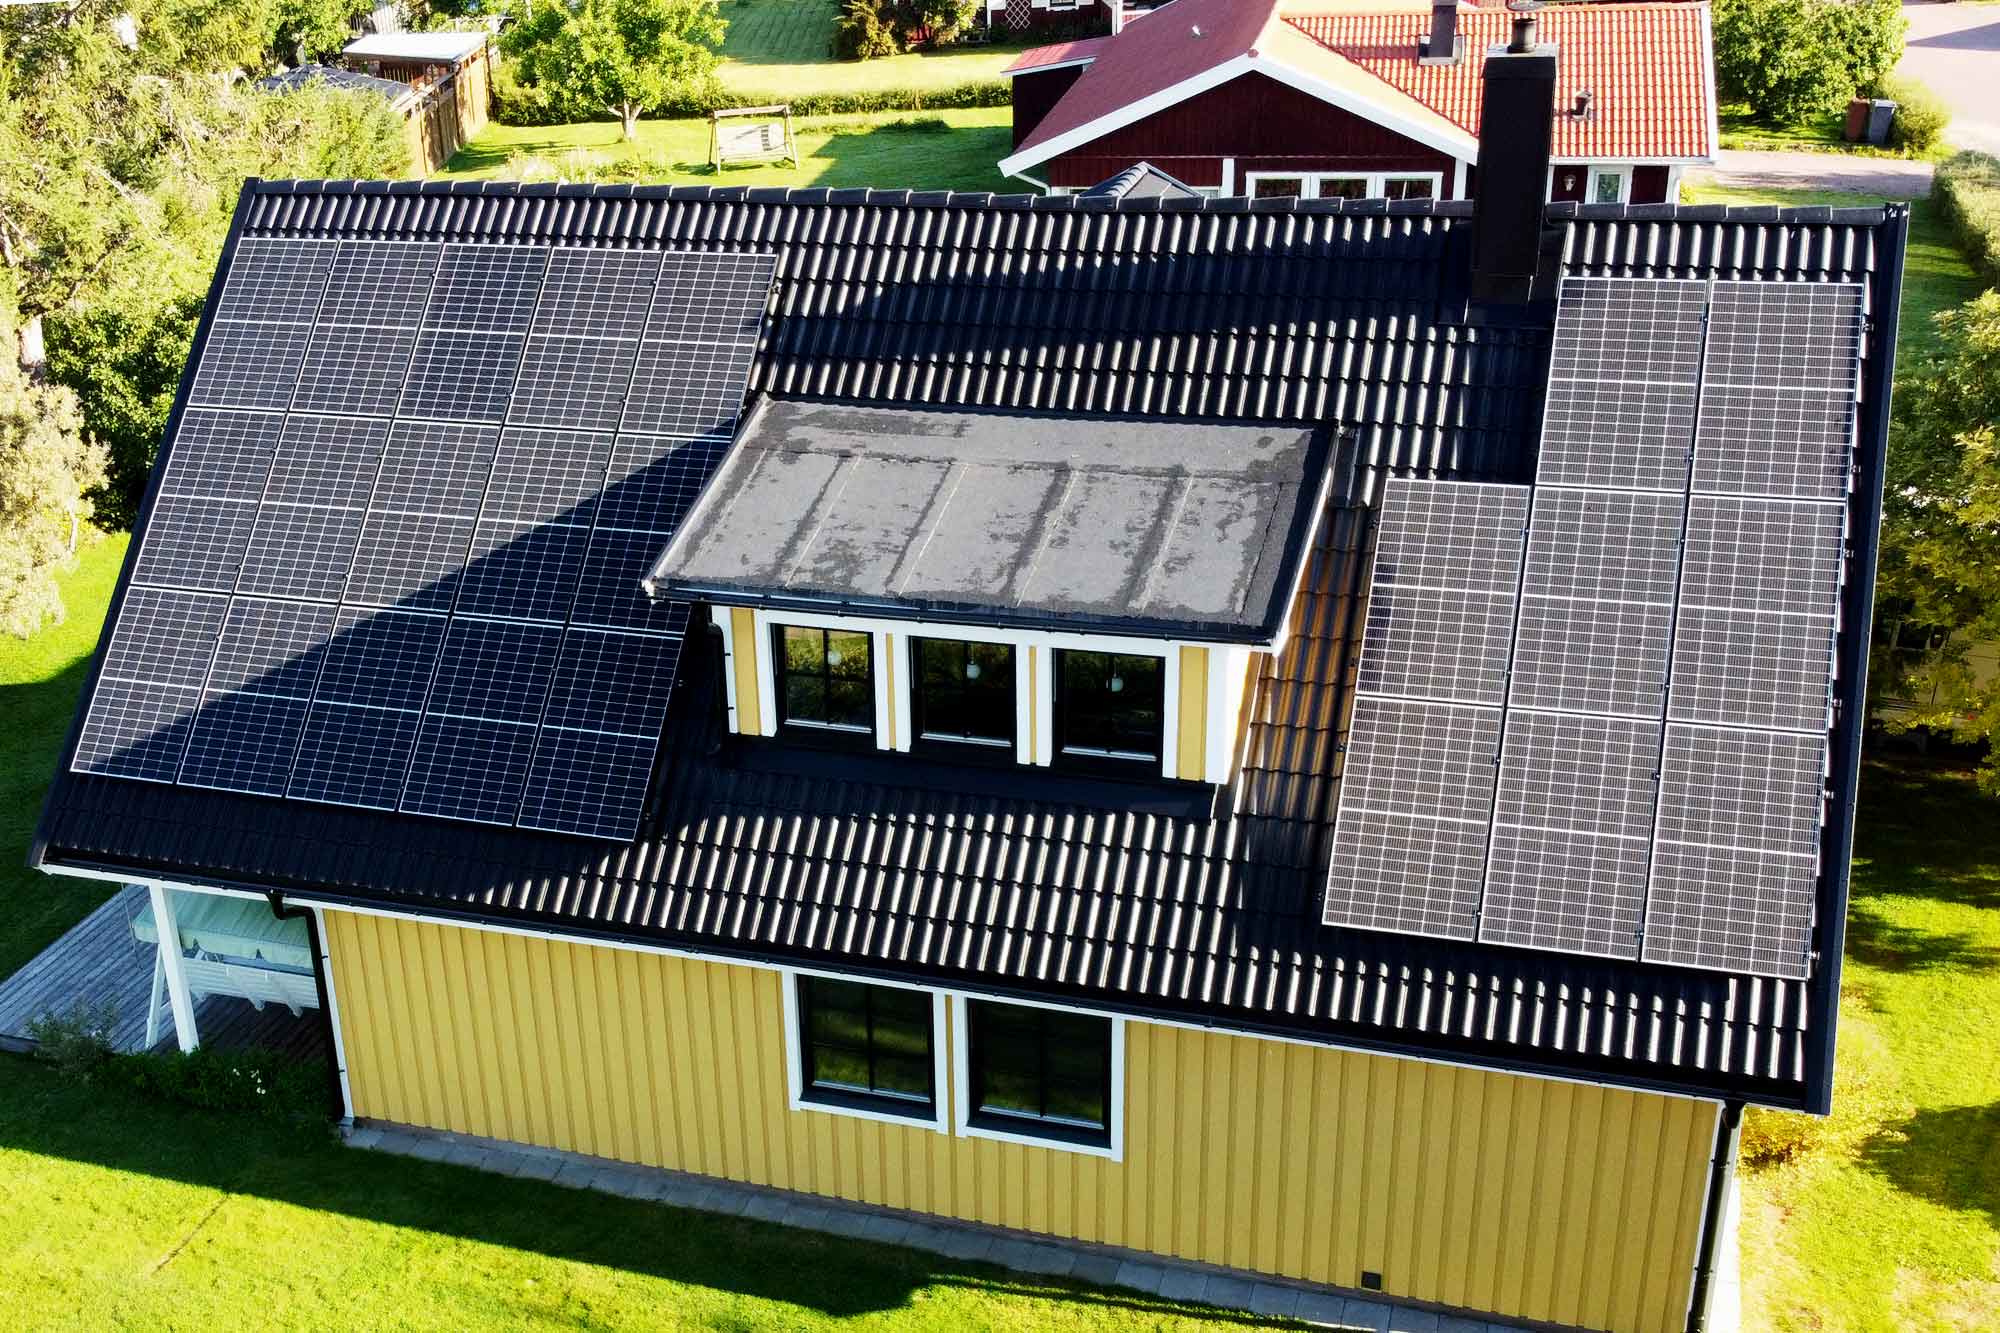 Gul fasad, svarta takpannor och solceller som snyggt smälter in!